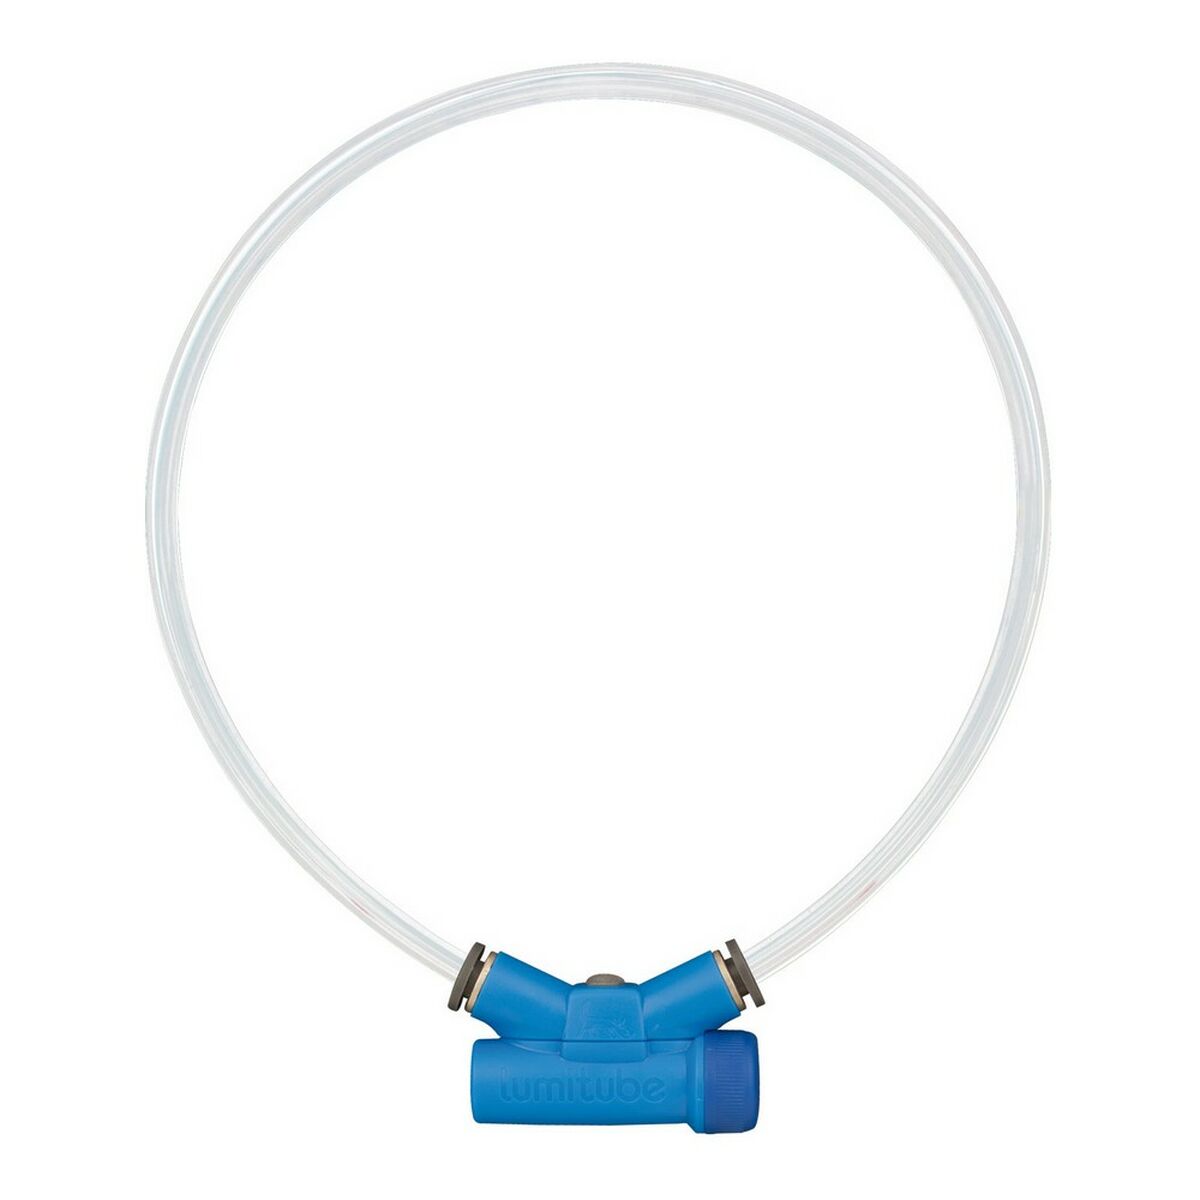 Collier pour Chien Red Dingo Voyant lumineux Bleu Taille S/M (15-50 cm)